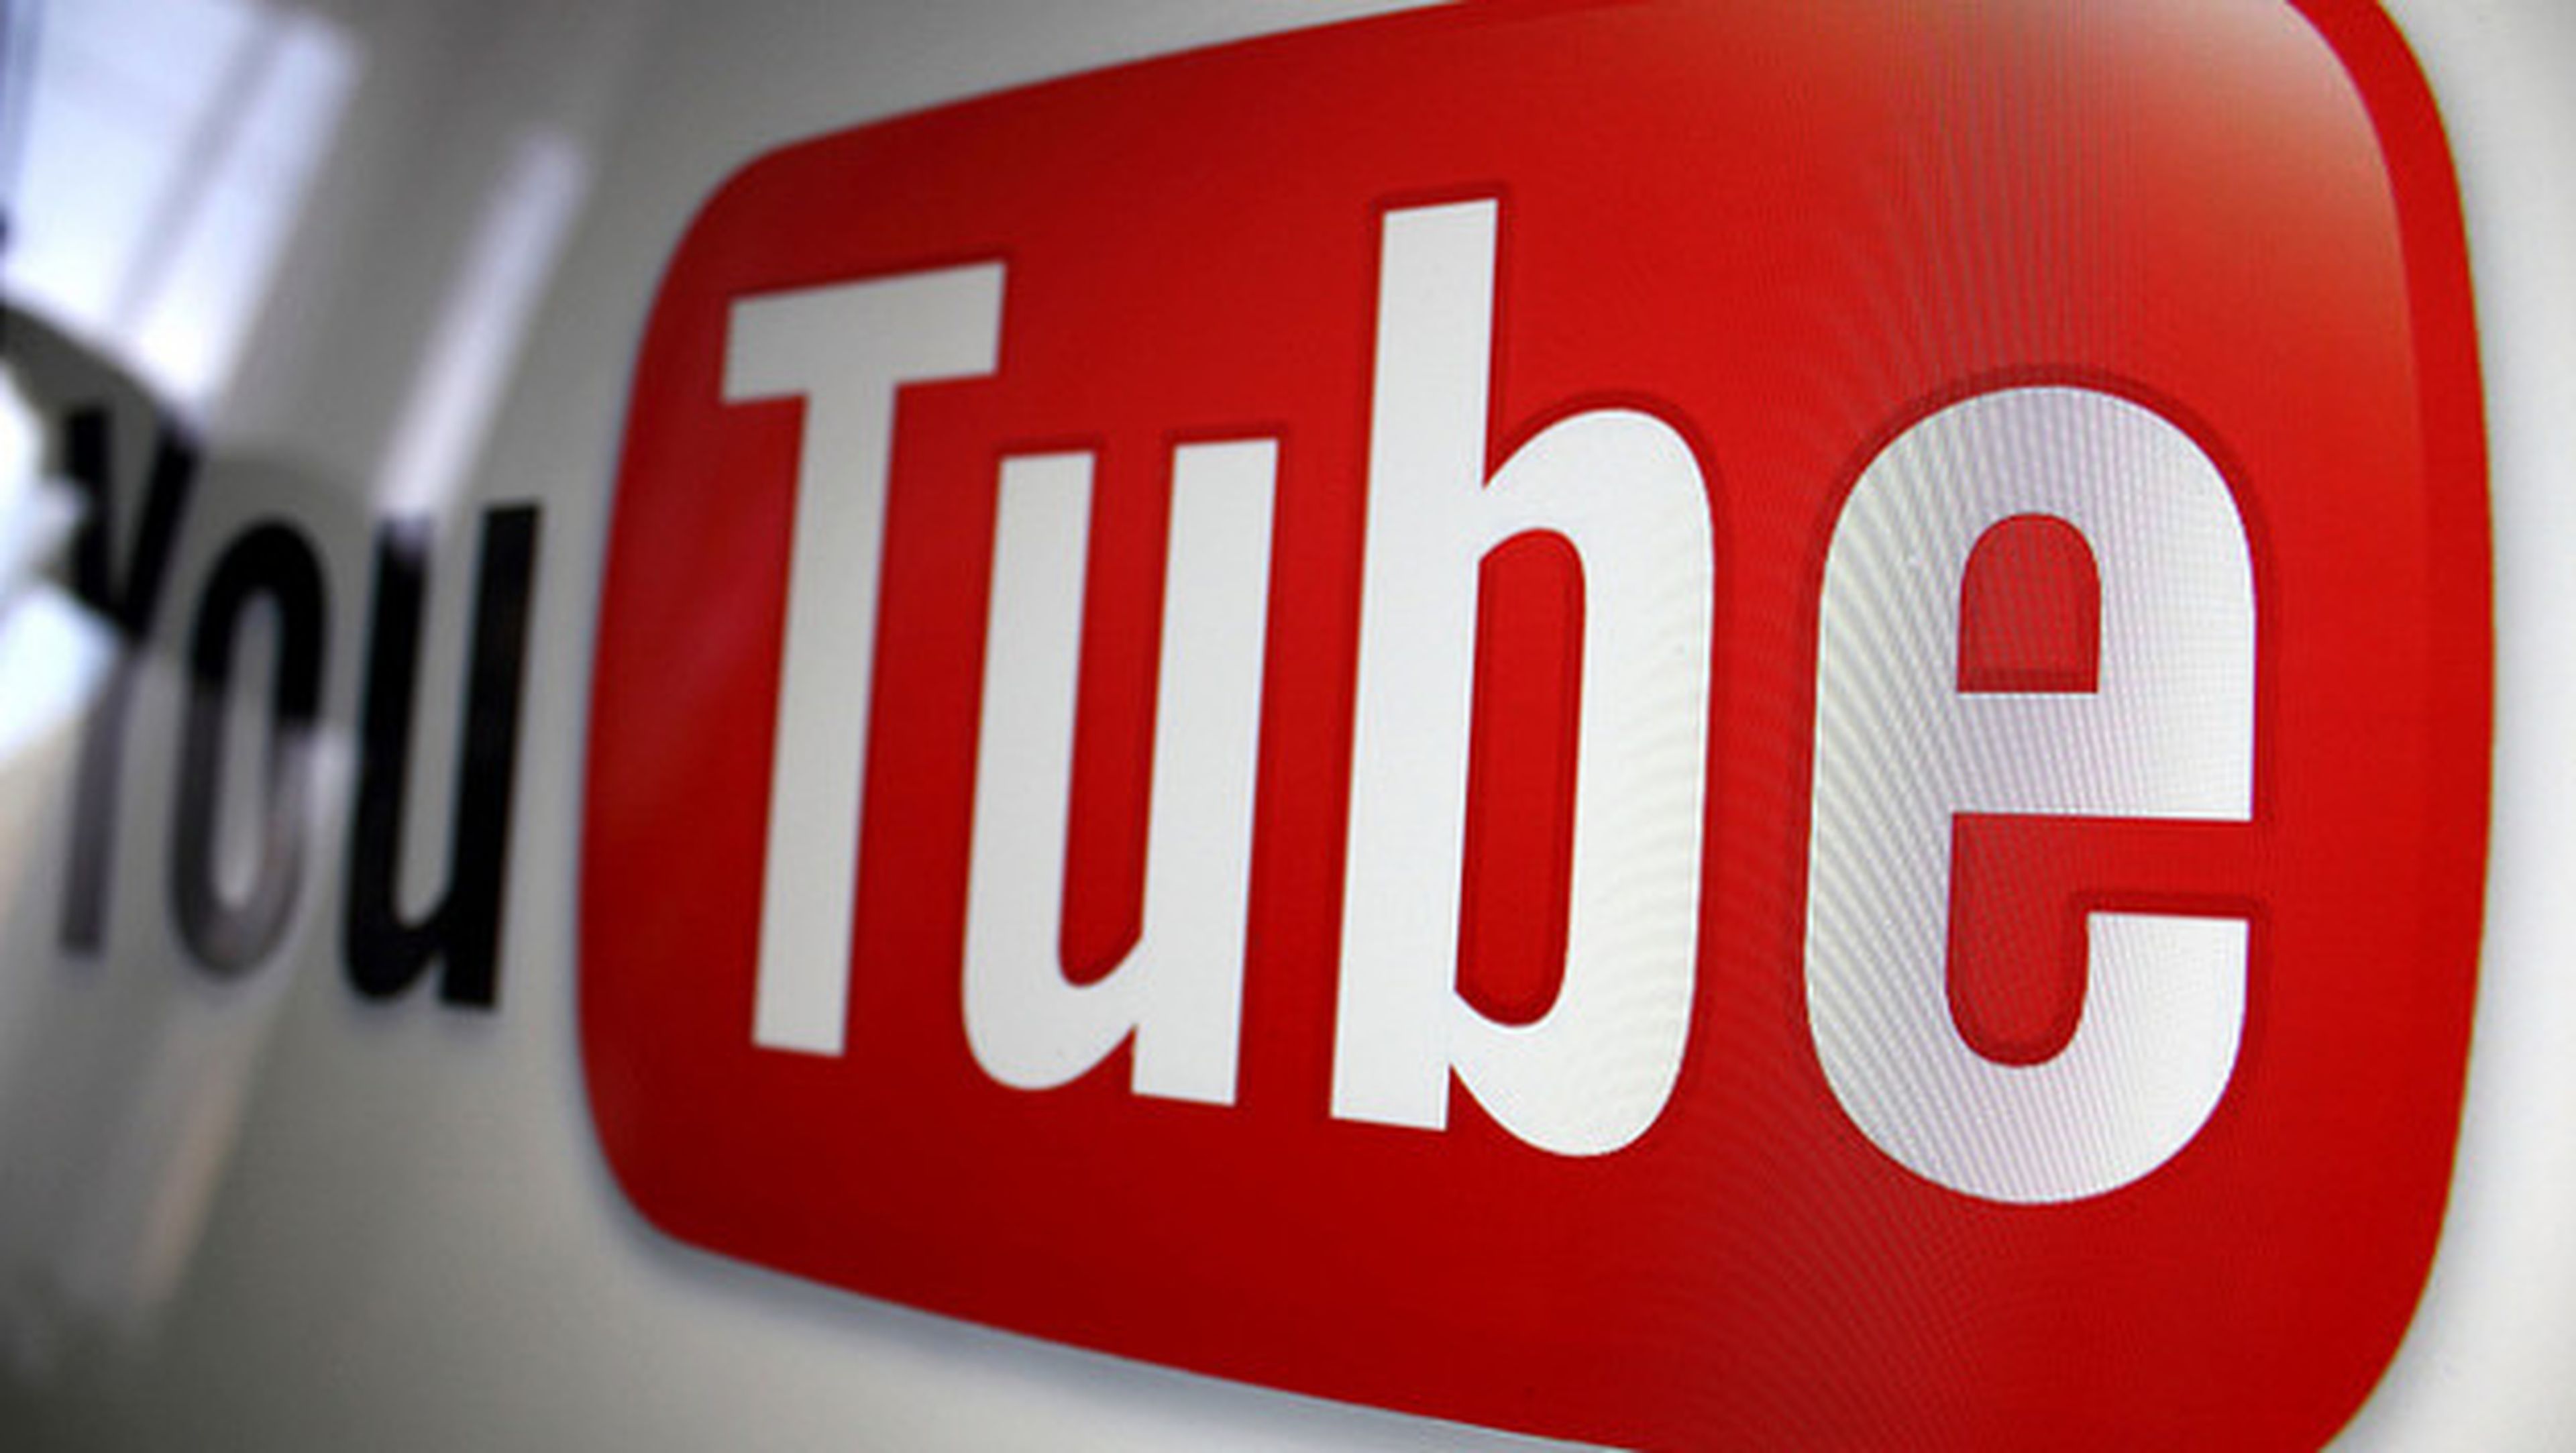 8,3 millones de vídeos borrados de YouTube por la IA de Google.